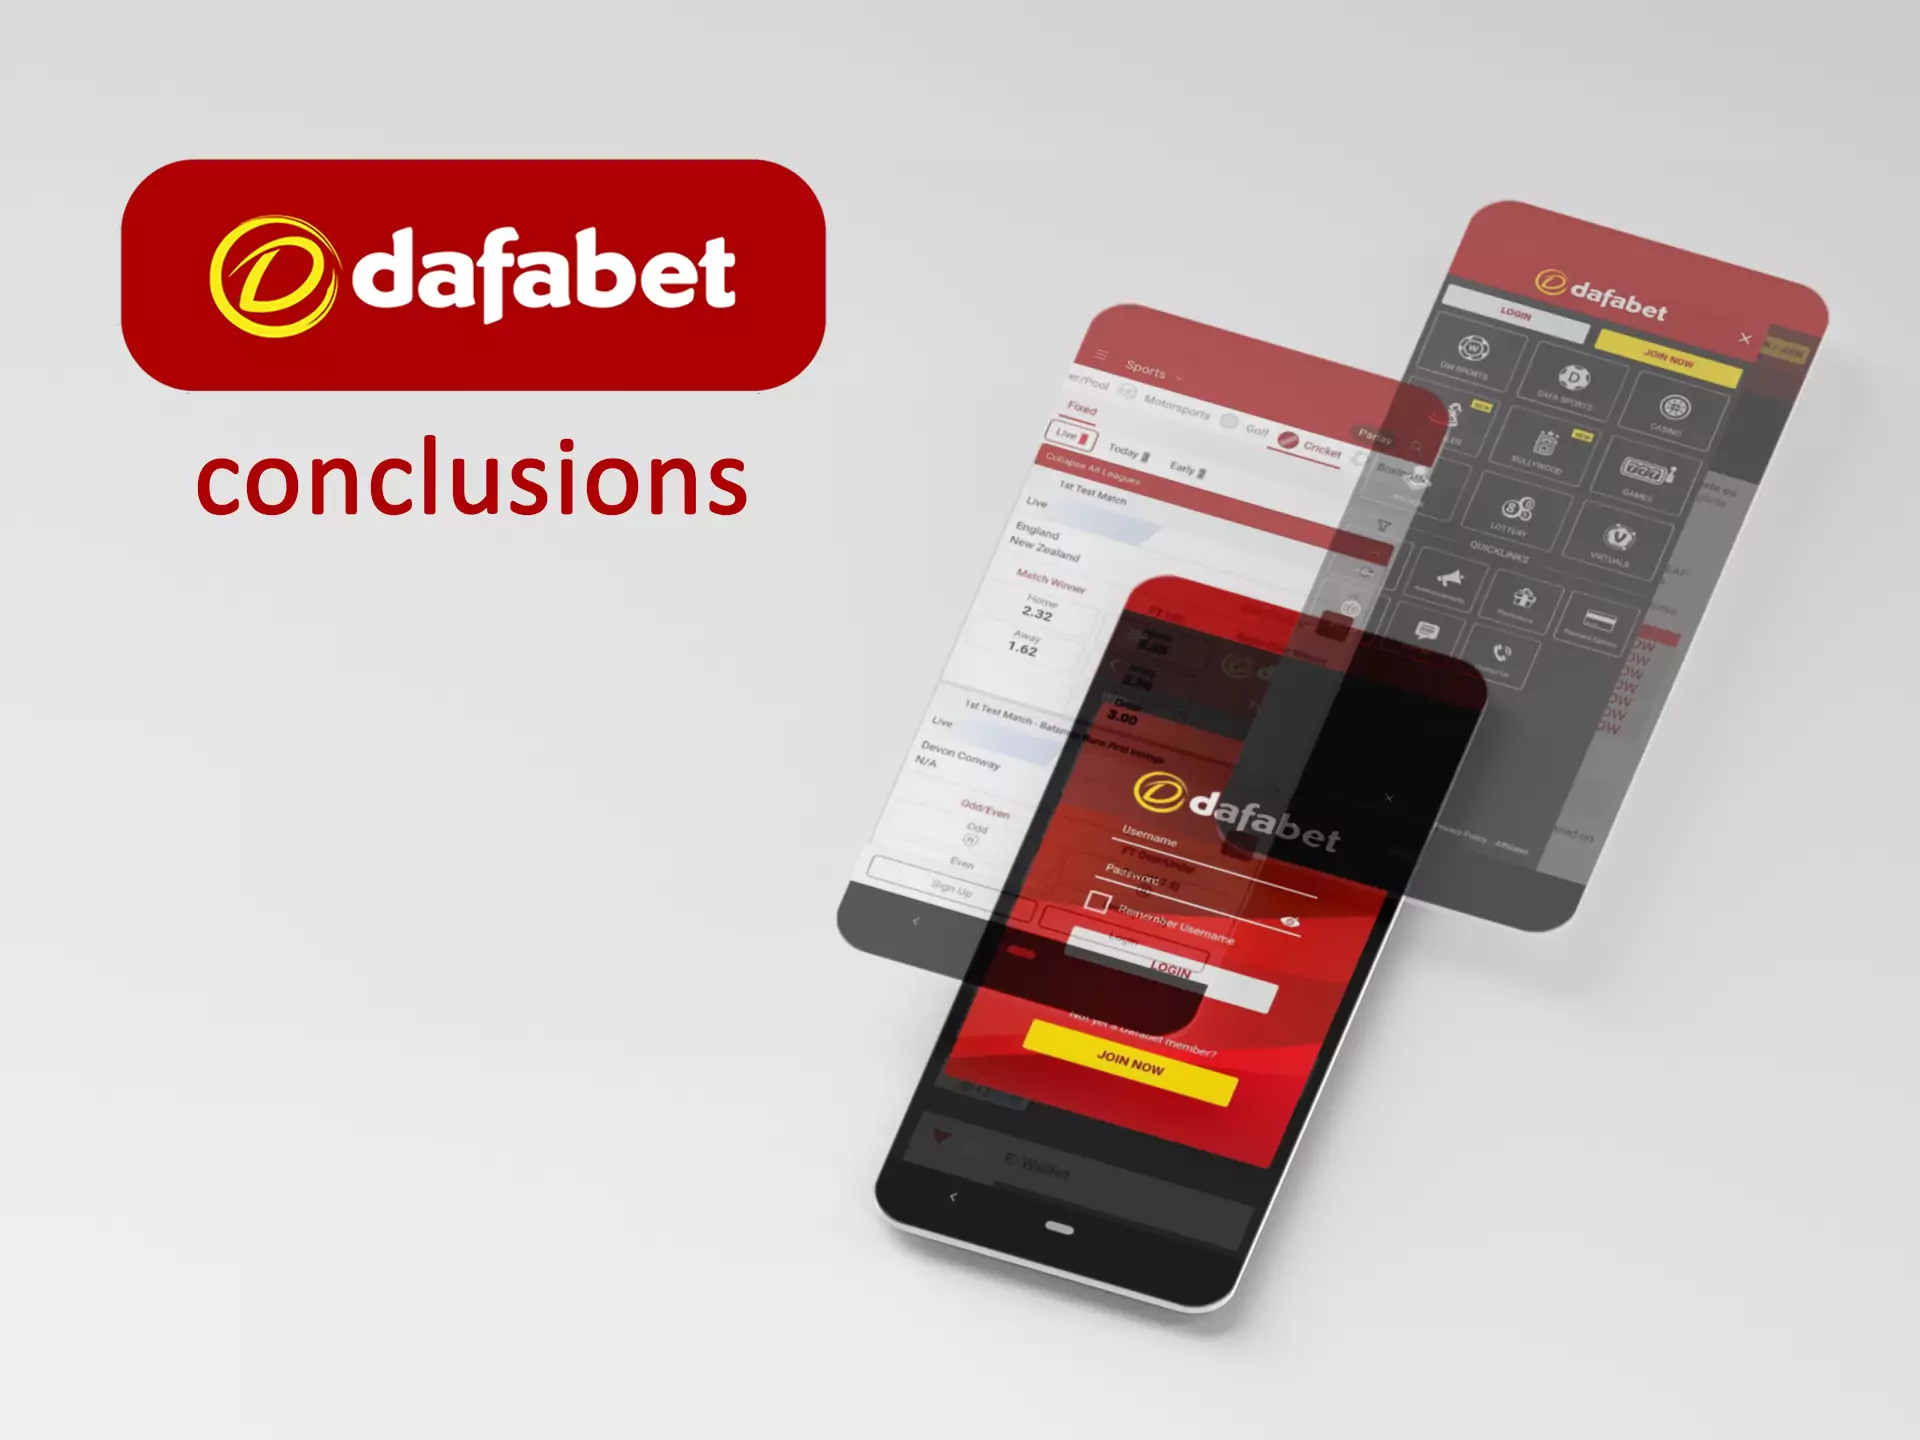 हमारे विशेषज्ञों ने Dafabet ऐप का विस्तार से विश्लेषण किया है और इसके बारे में निष्कर्ष निकाला है।